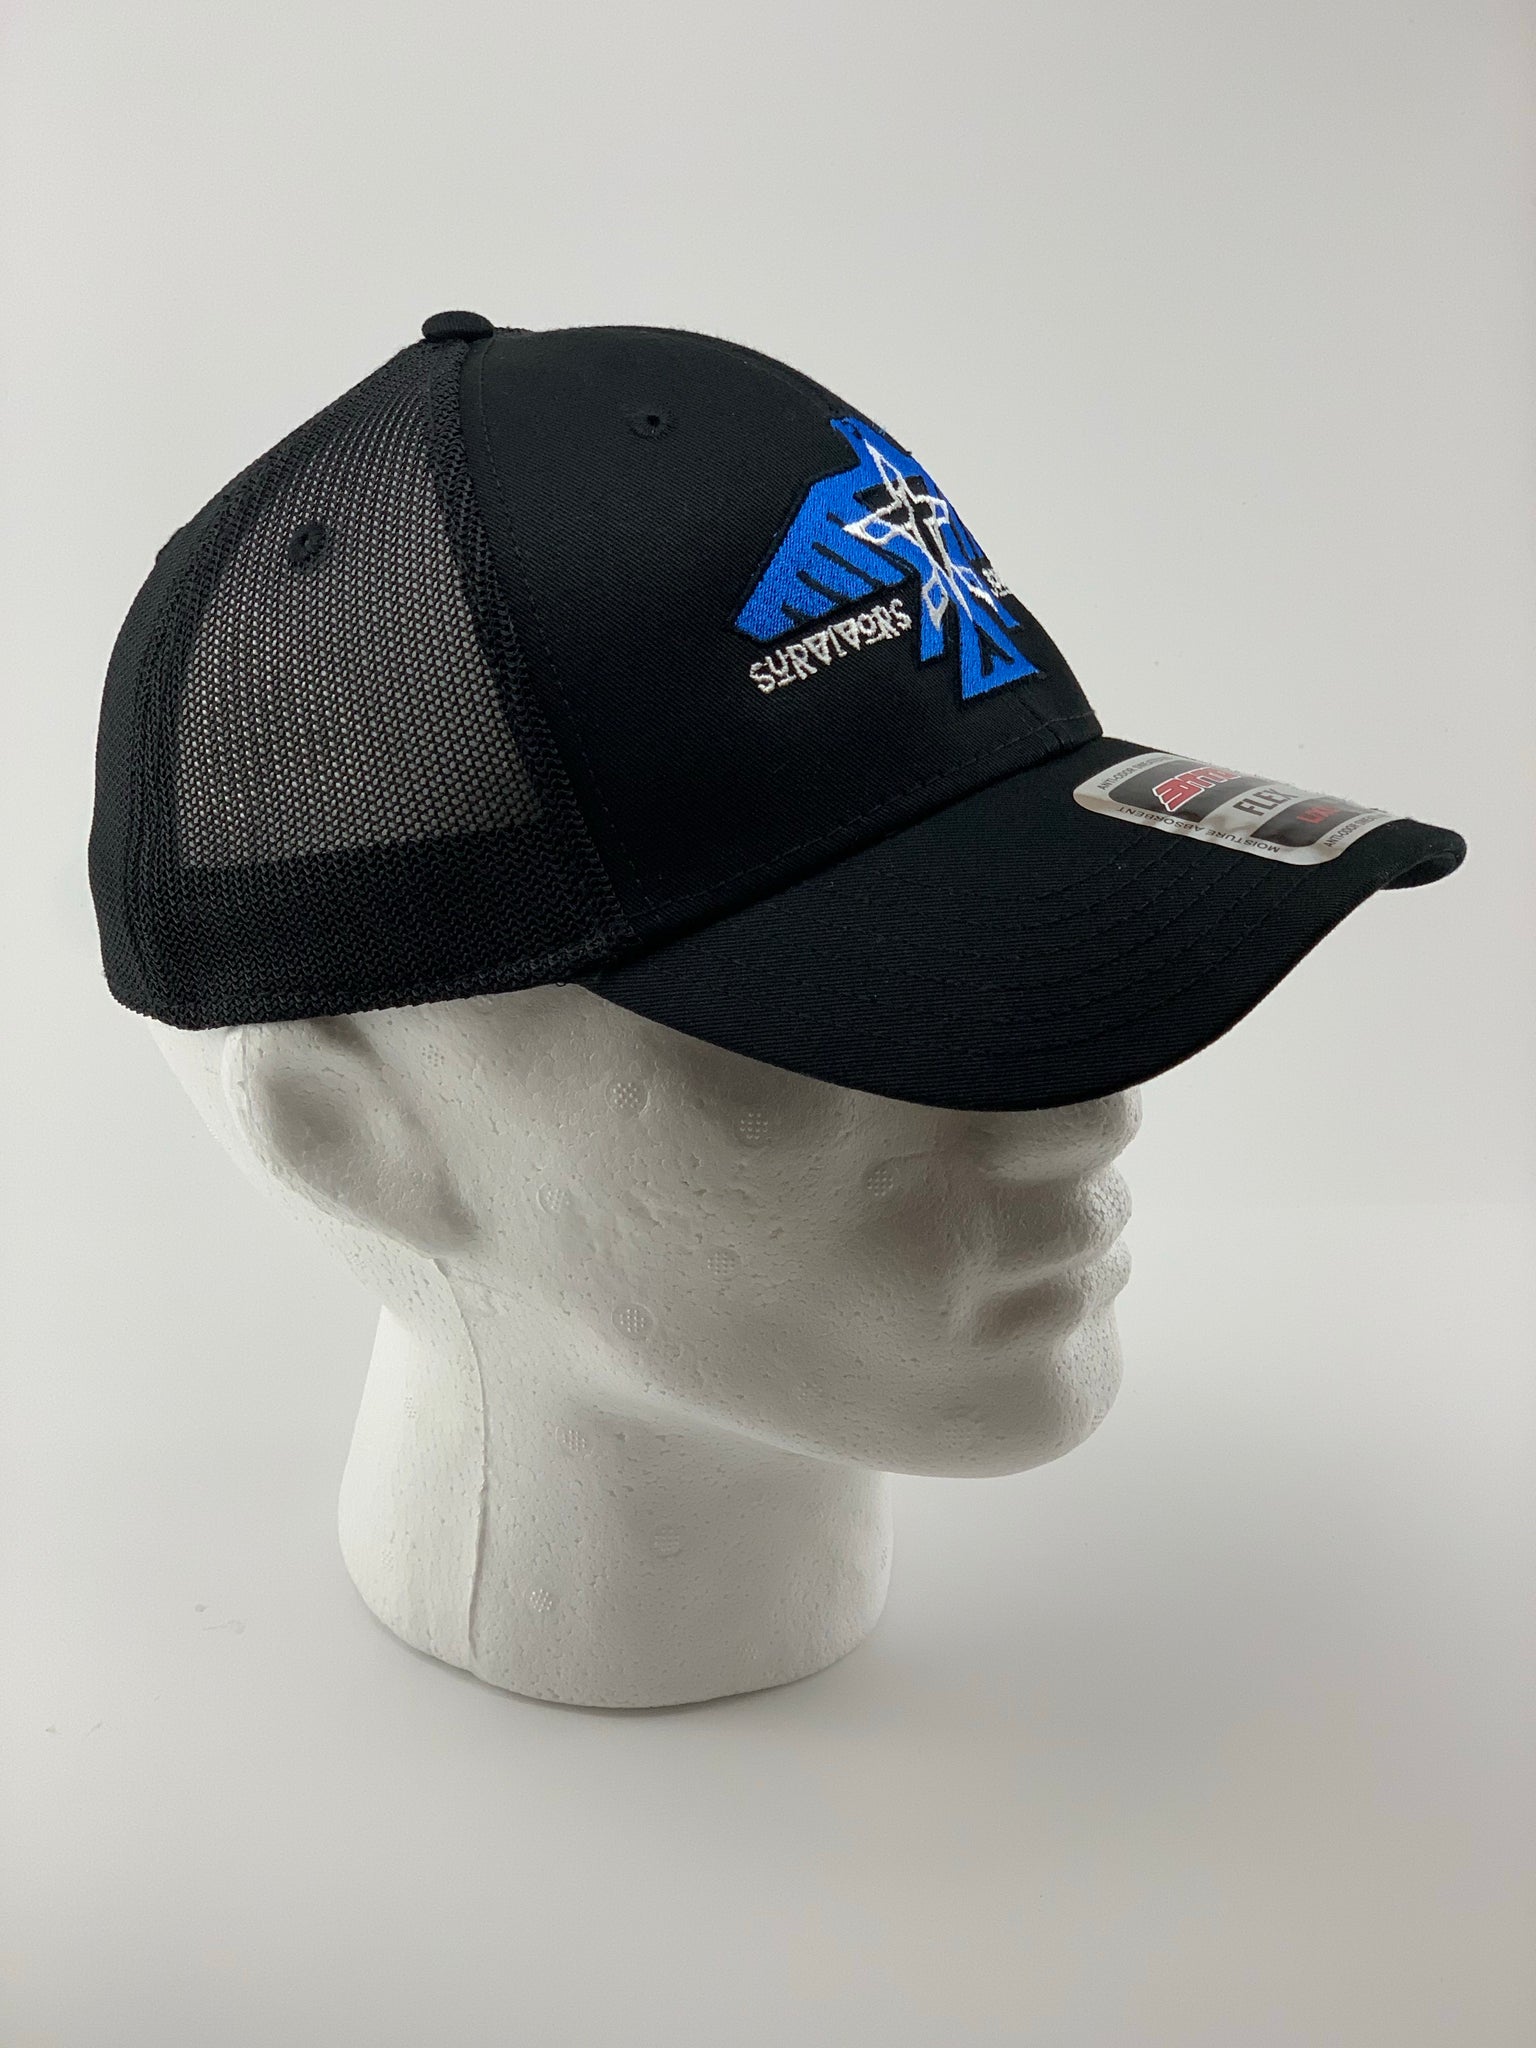 S.J. Blue/White Logo Hat Black/Volt (Flexfit)